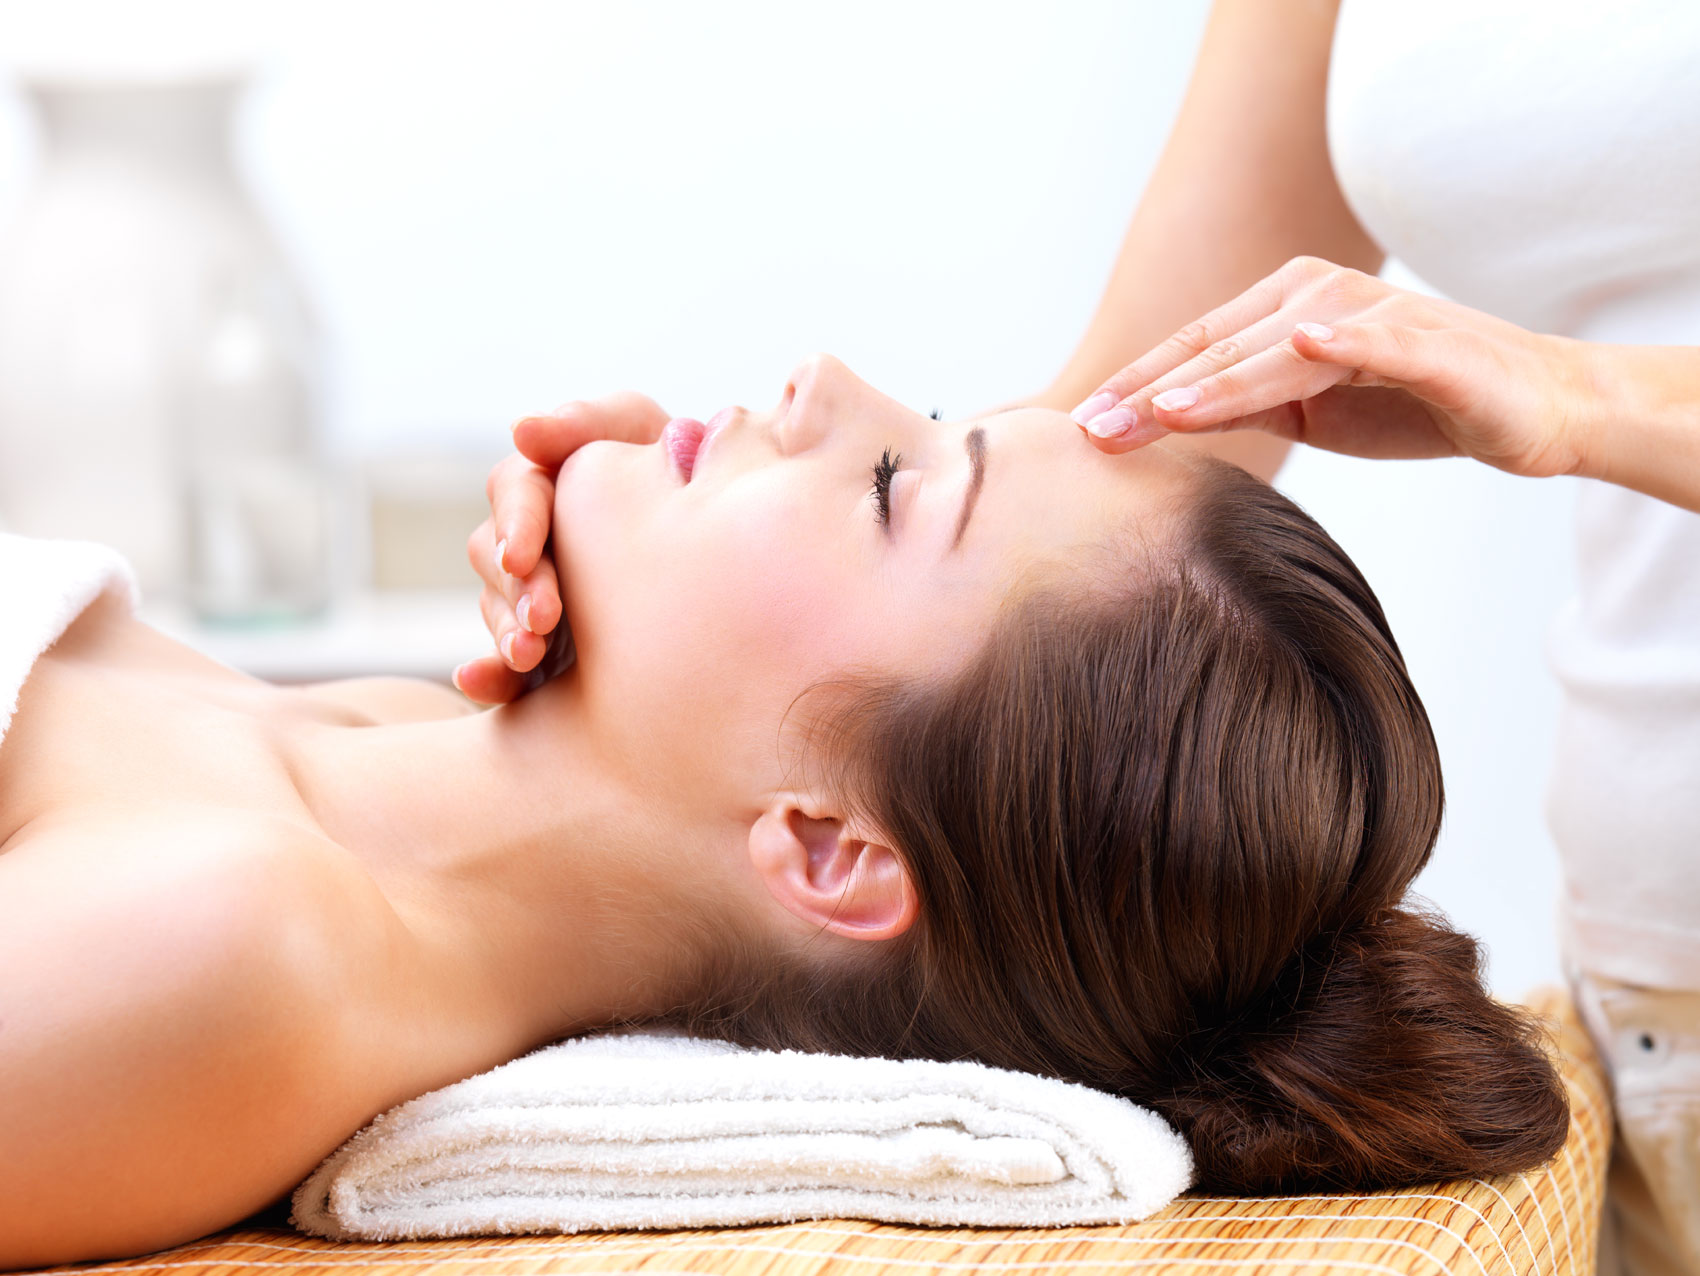 Massaggio Viso: benefici, passaggi e consigli utili